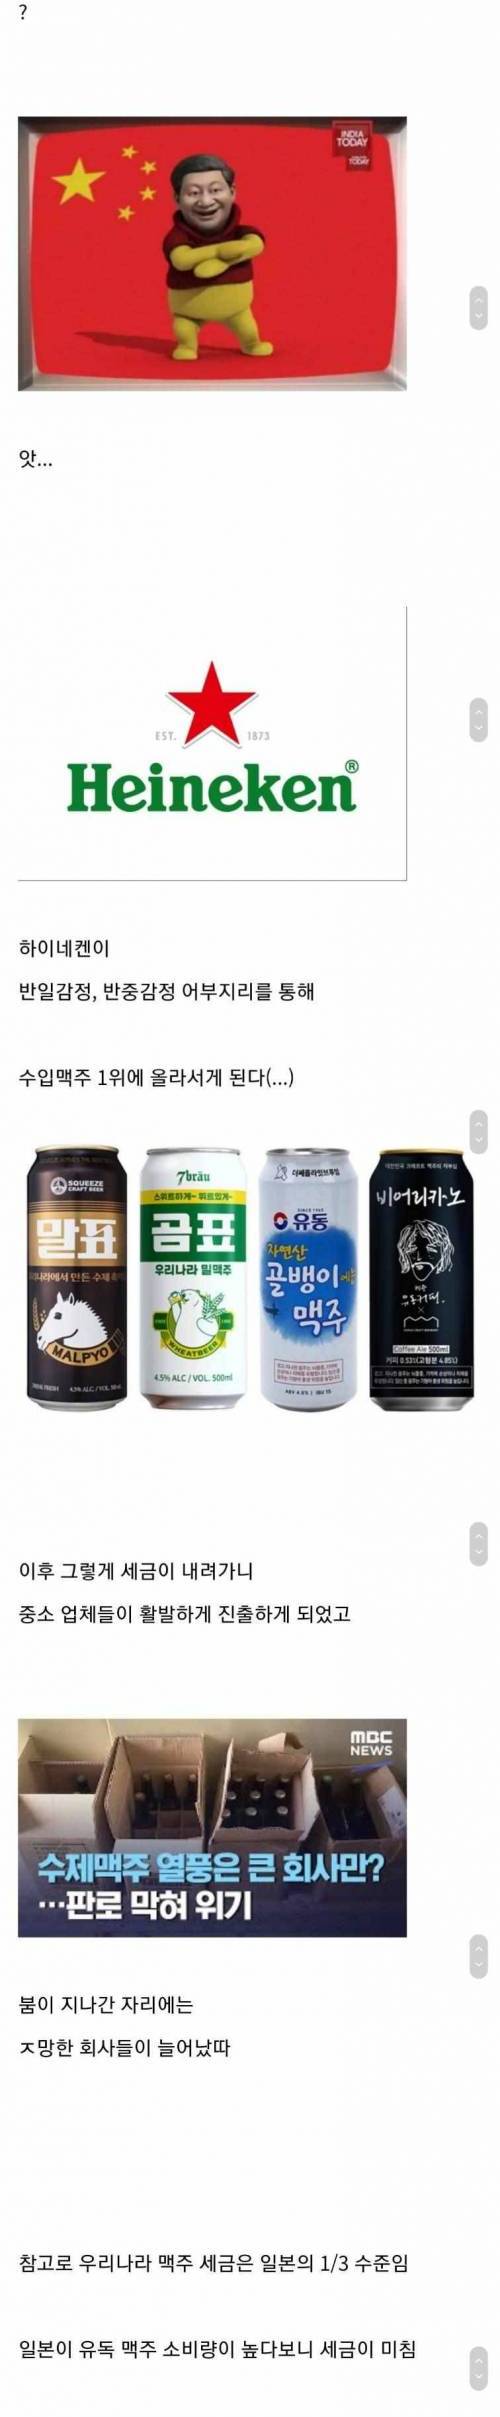 [스압] 한국에 수제 맥주 붐이 일어난 이유.jpg